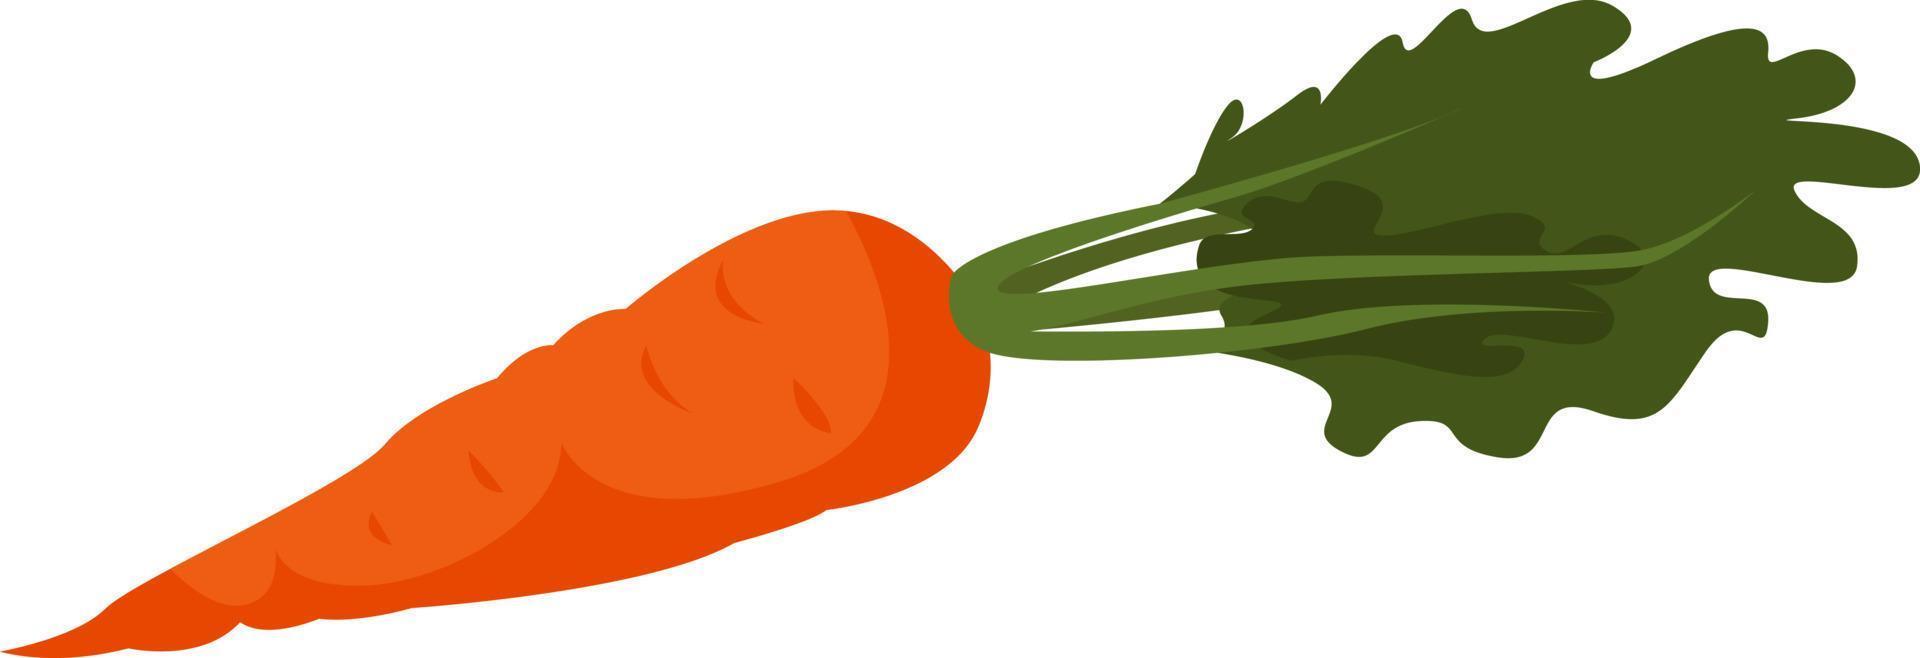 Fresh carrot, illustration, vector on white background